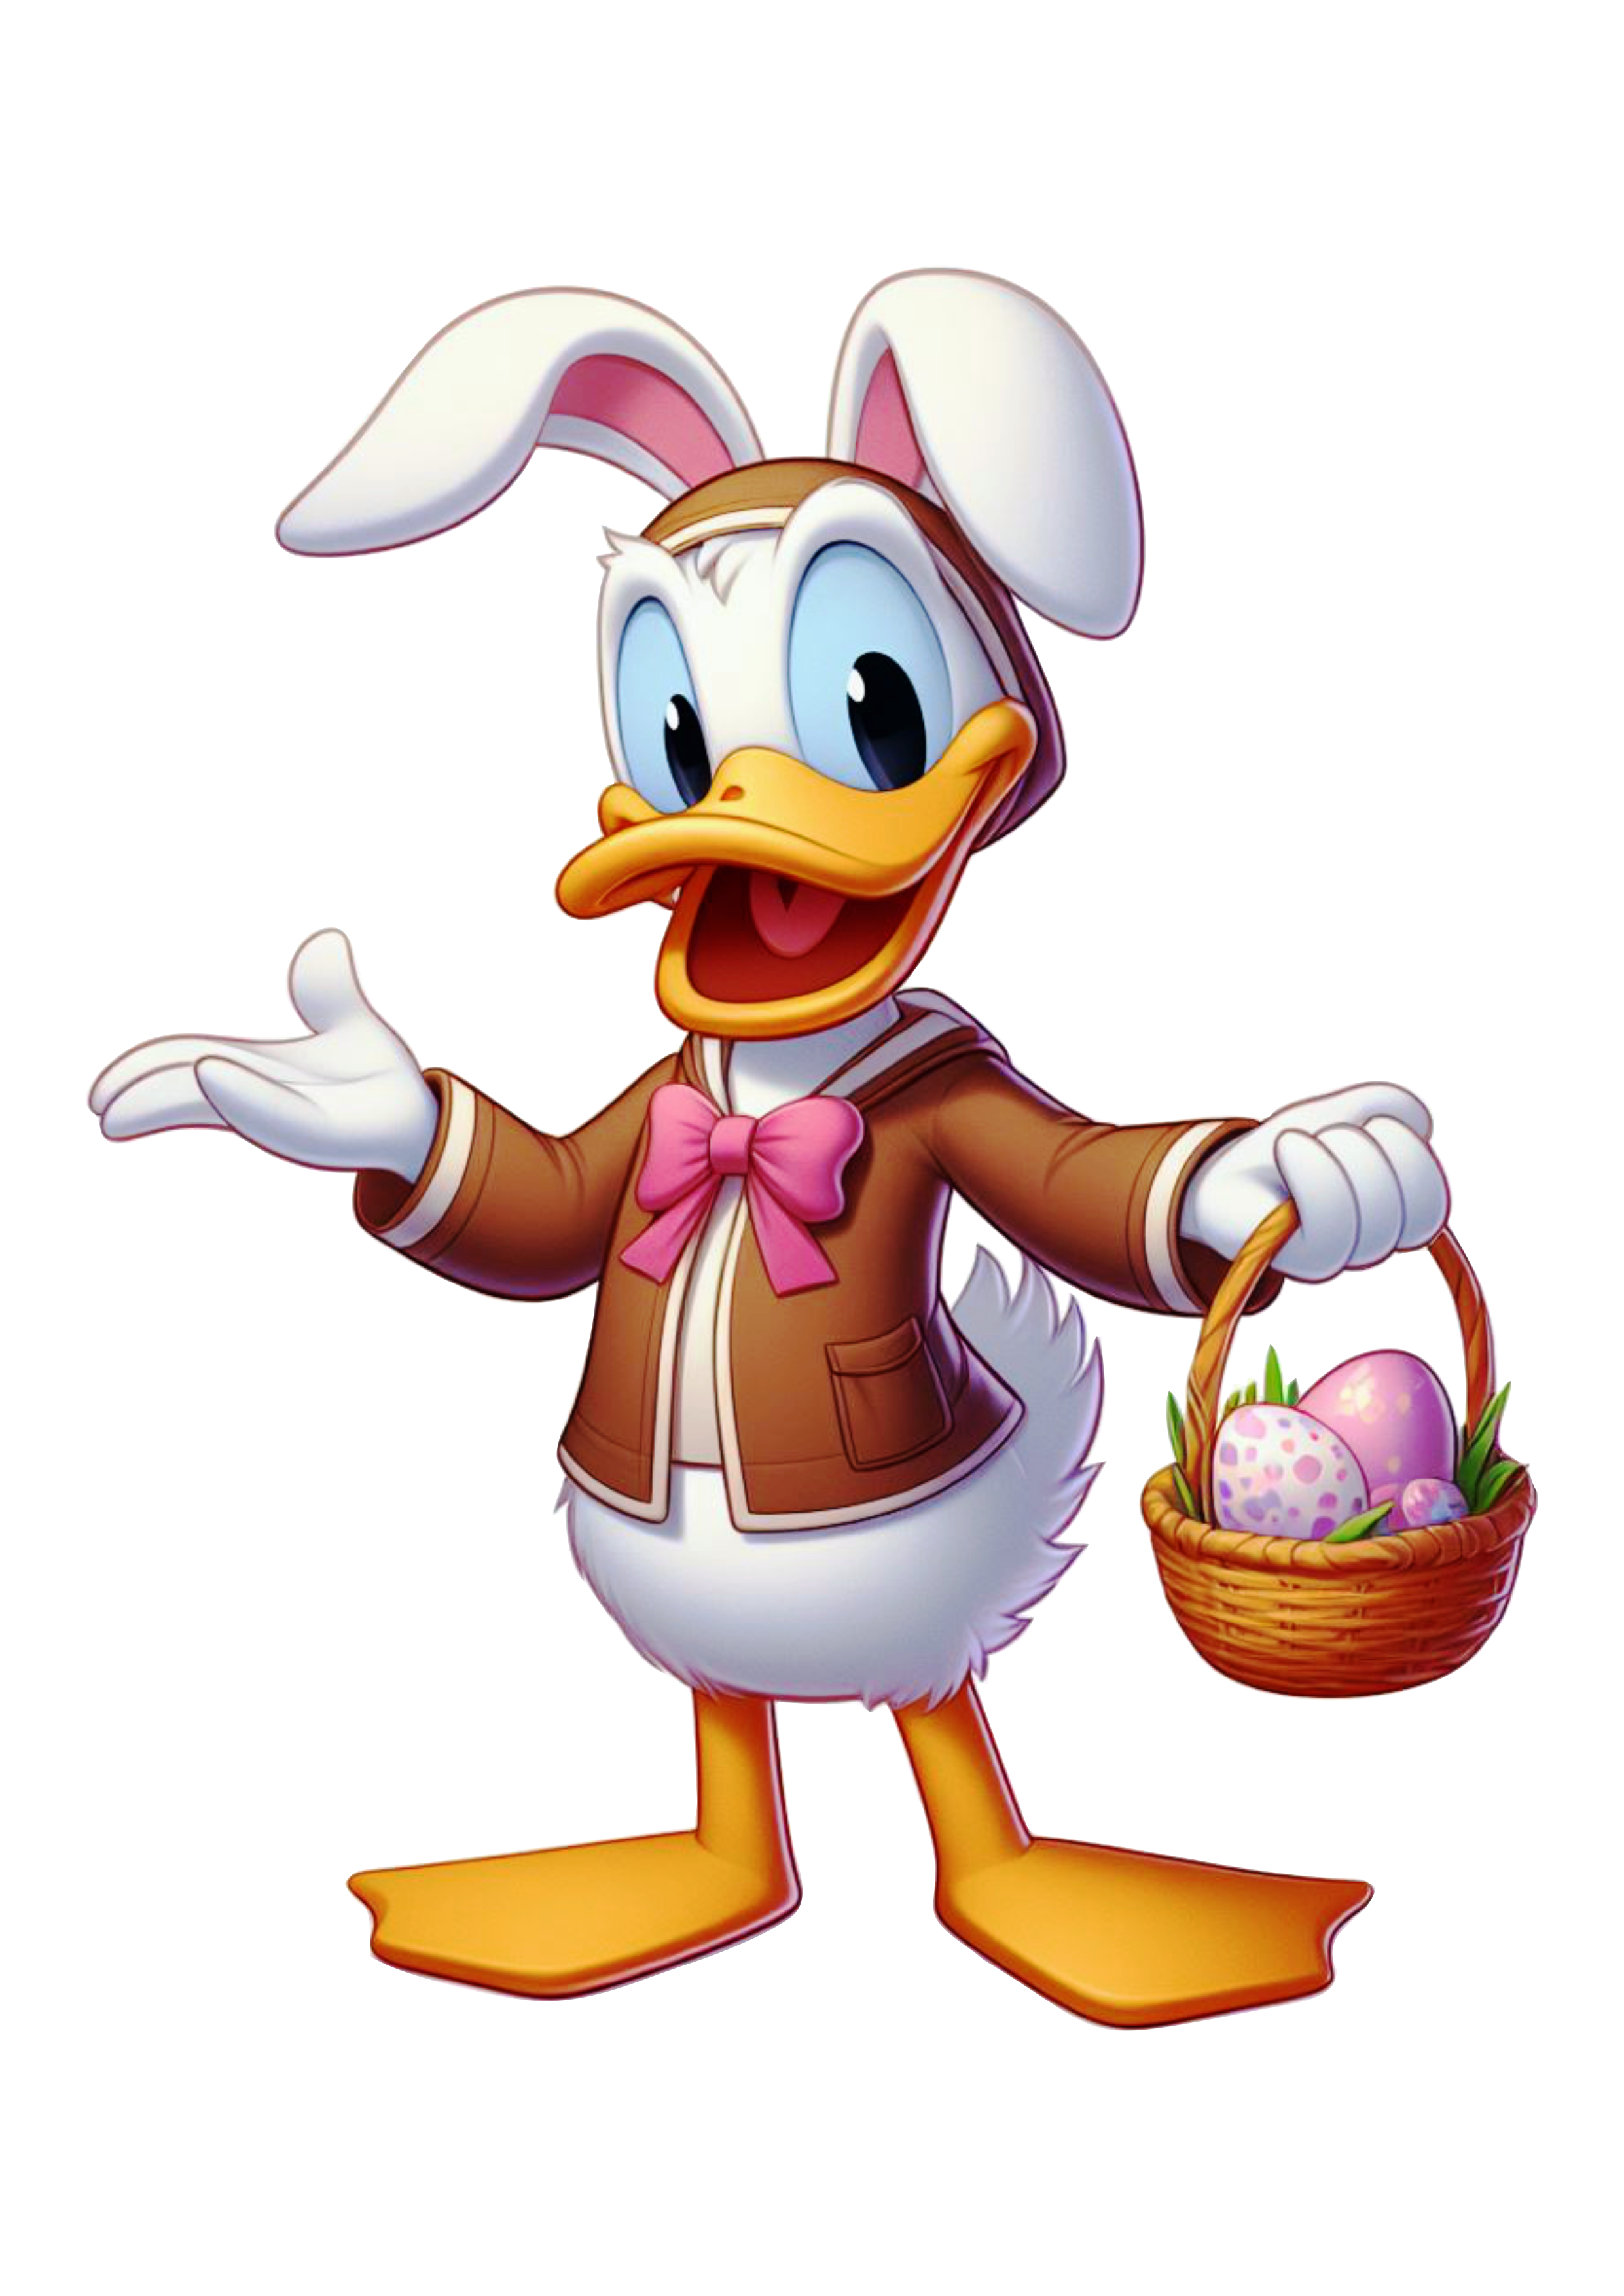 Pato Donald fantasiado de coelhinho da páscoa clipart vetor roupa marrom artes visuais Disney png image